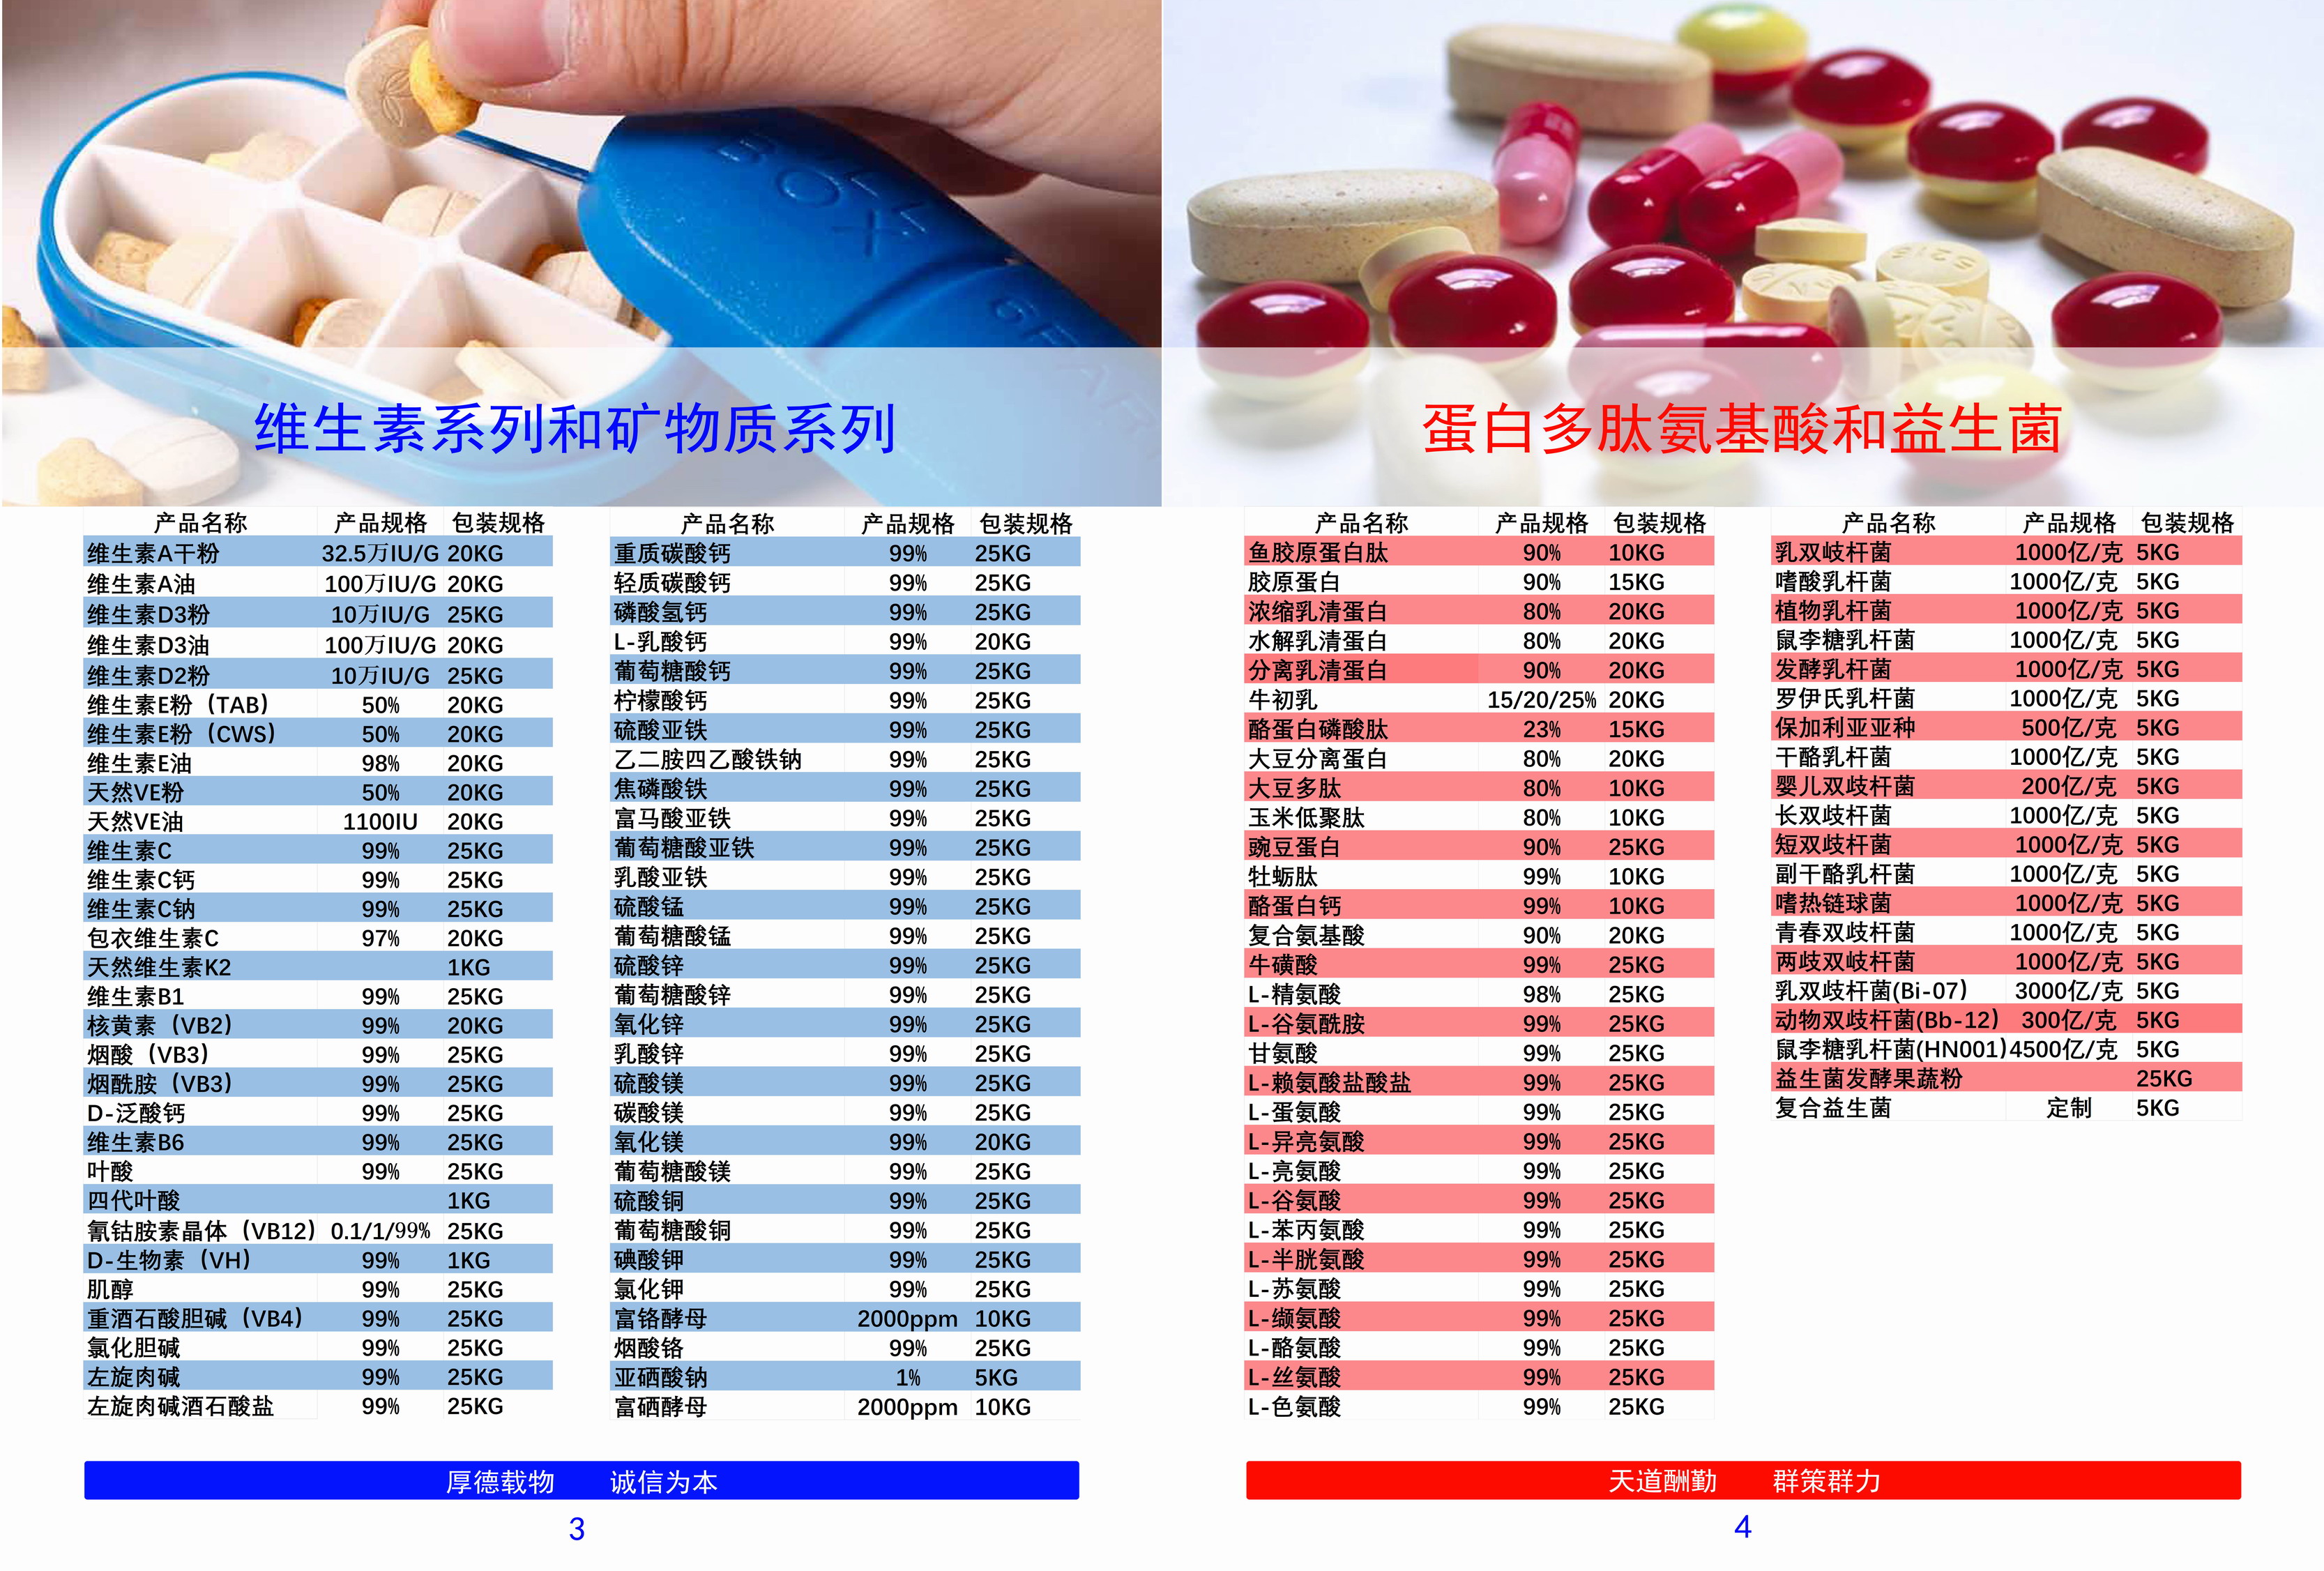 广州市维生素B6 vb6厂家供应营养强化剂江西天新99%维生素B6 vb6优质维生素供应商